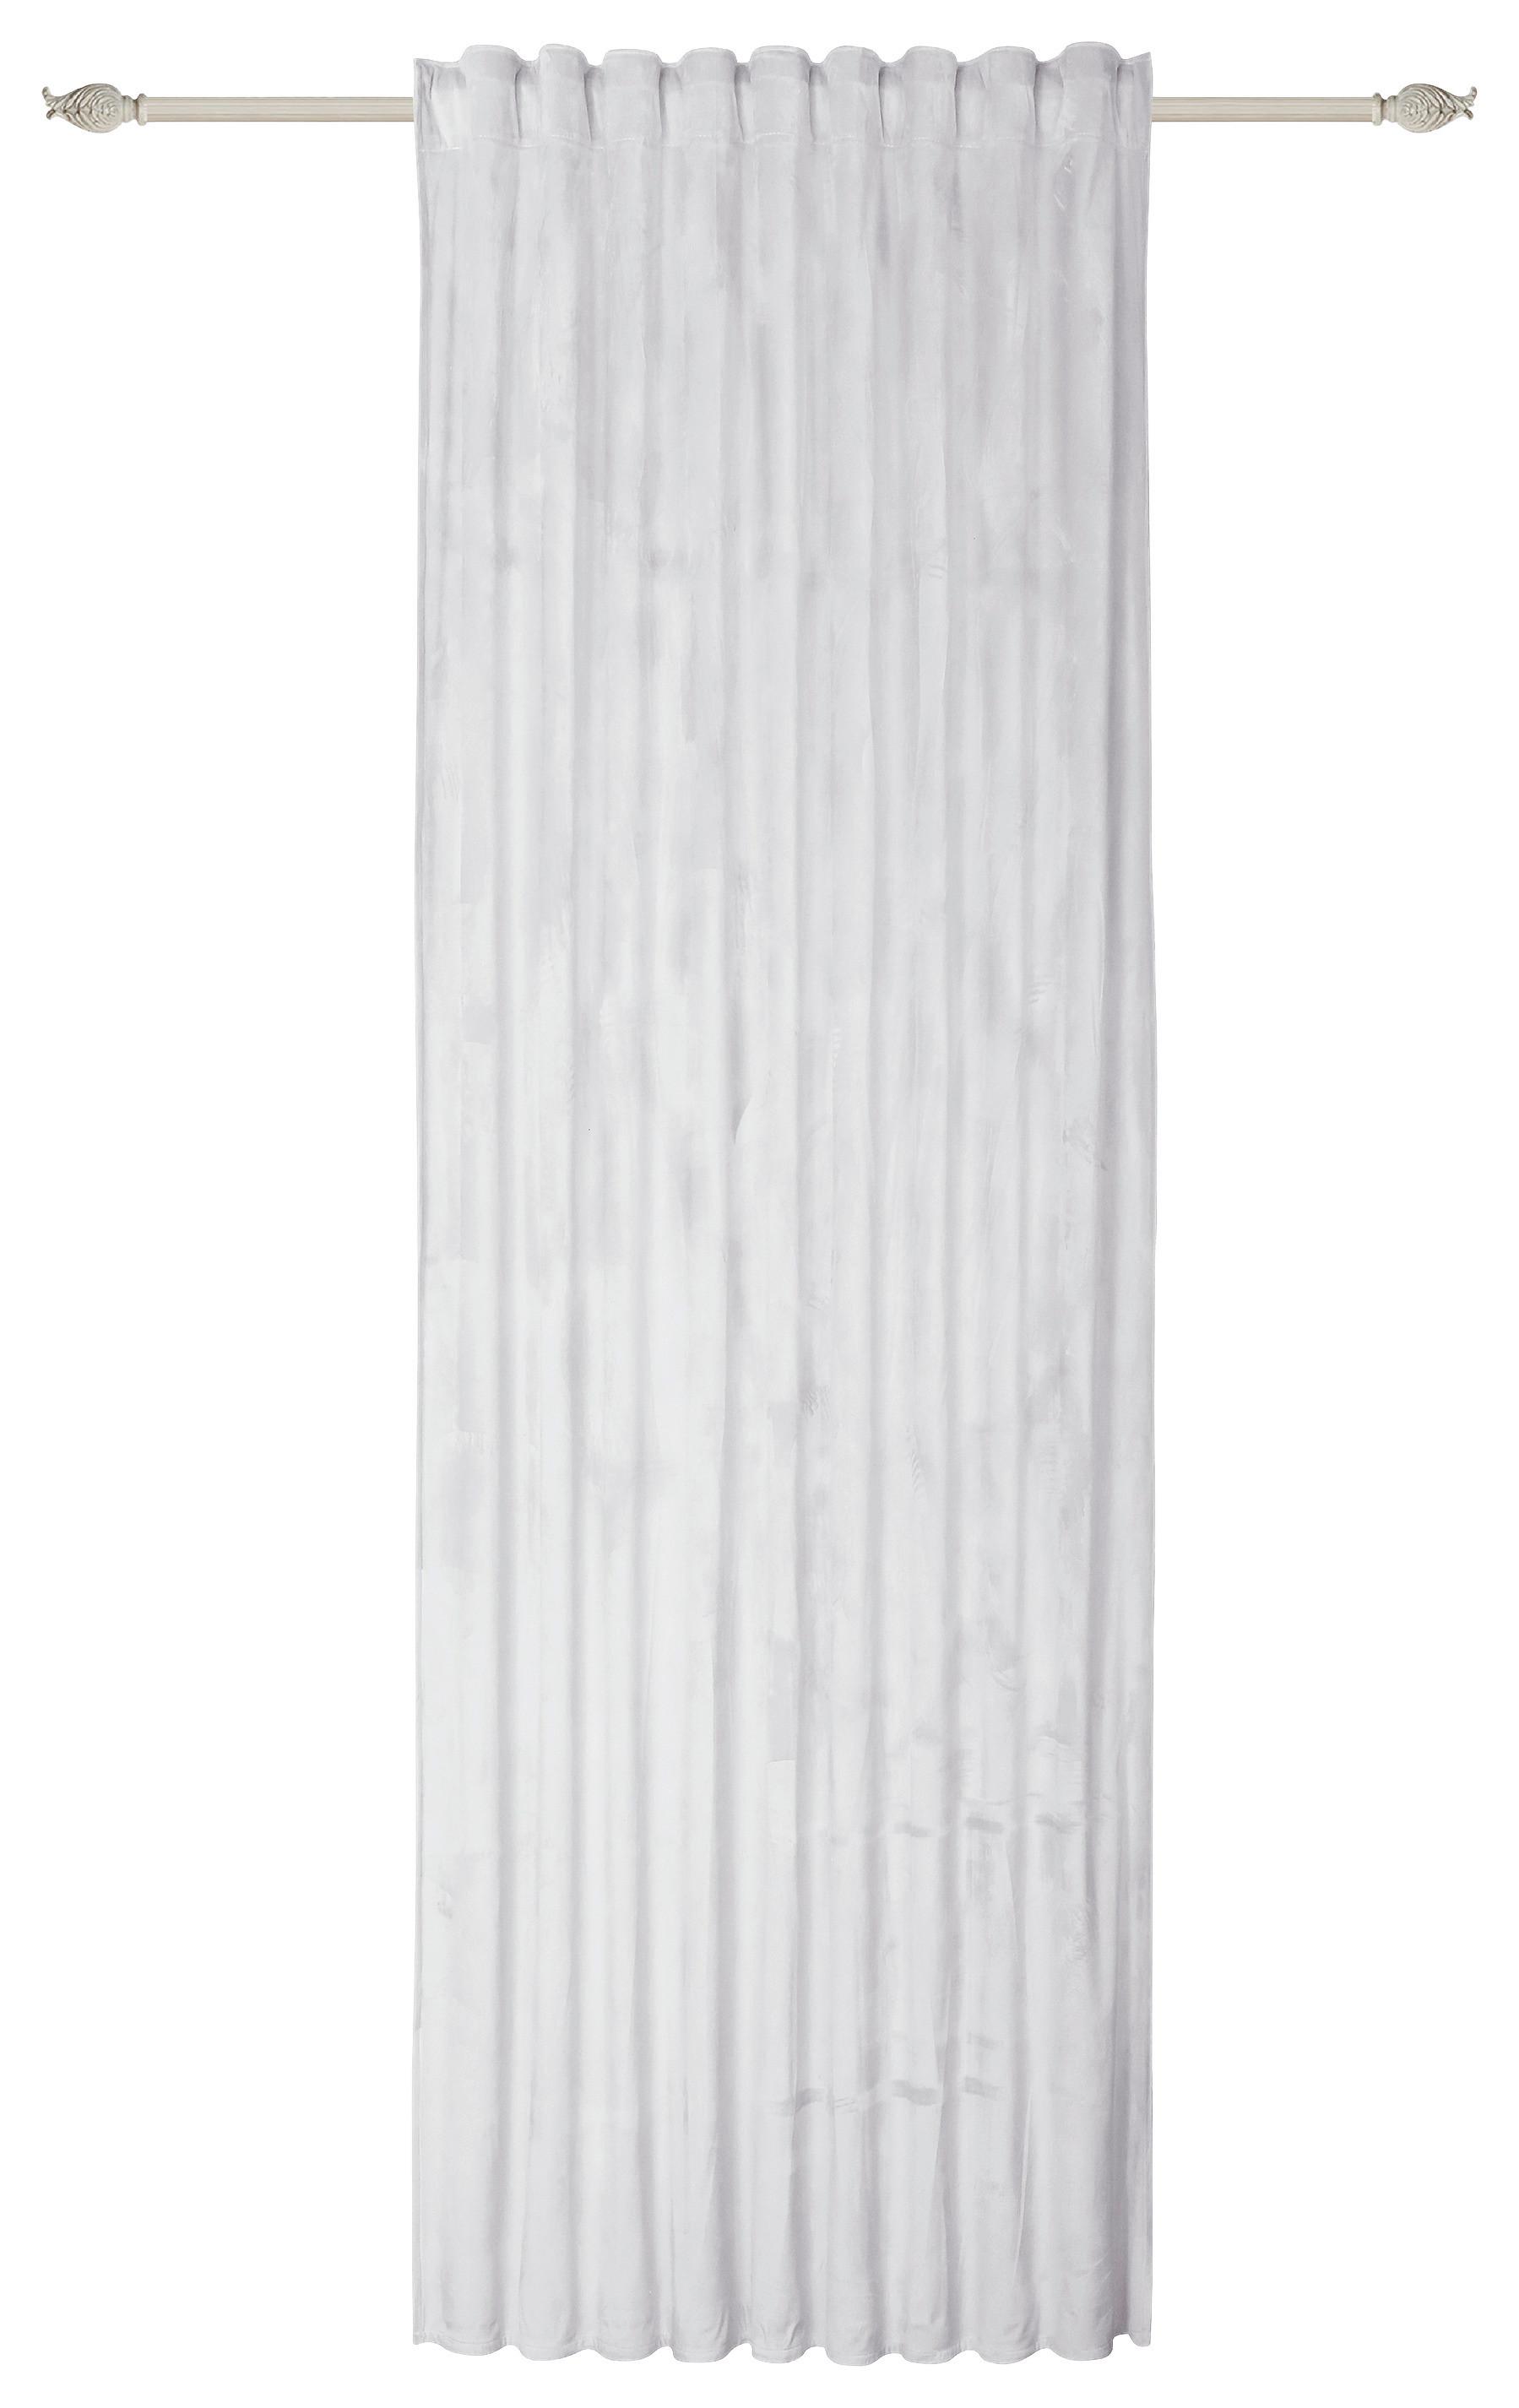 Készfüggöny Romy - Ezüst, modern, Textil (140/245cm) - Luca Bessoni